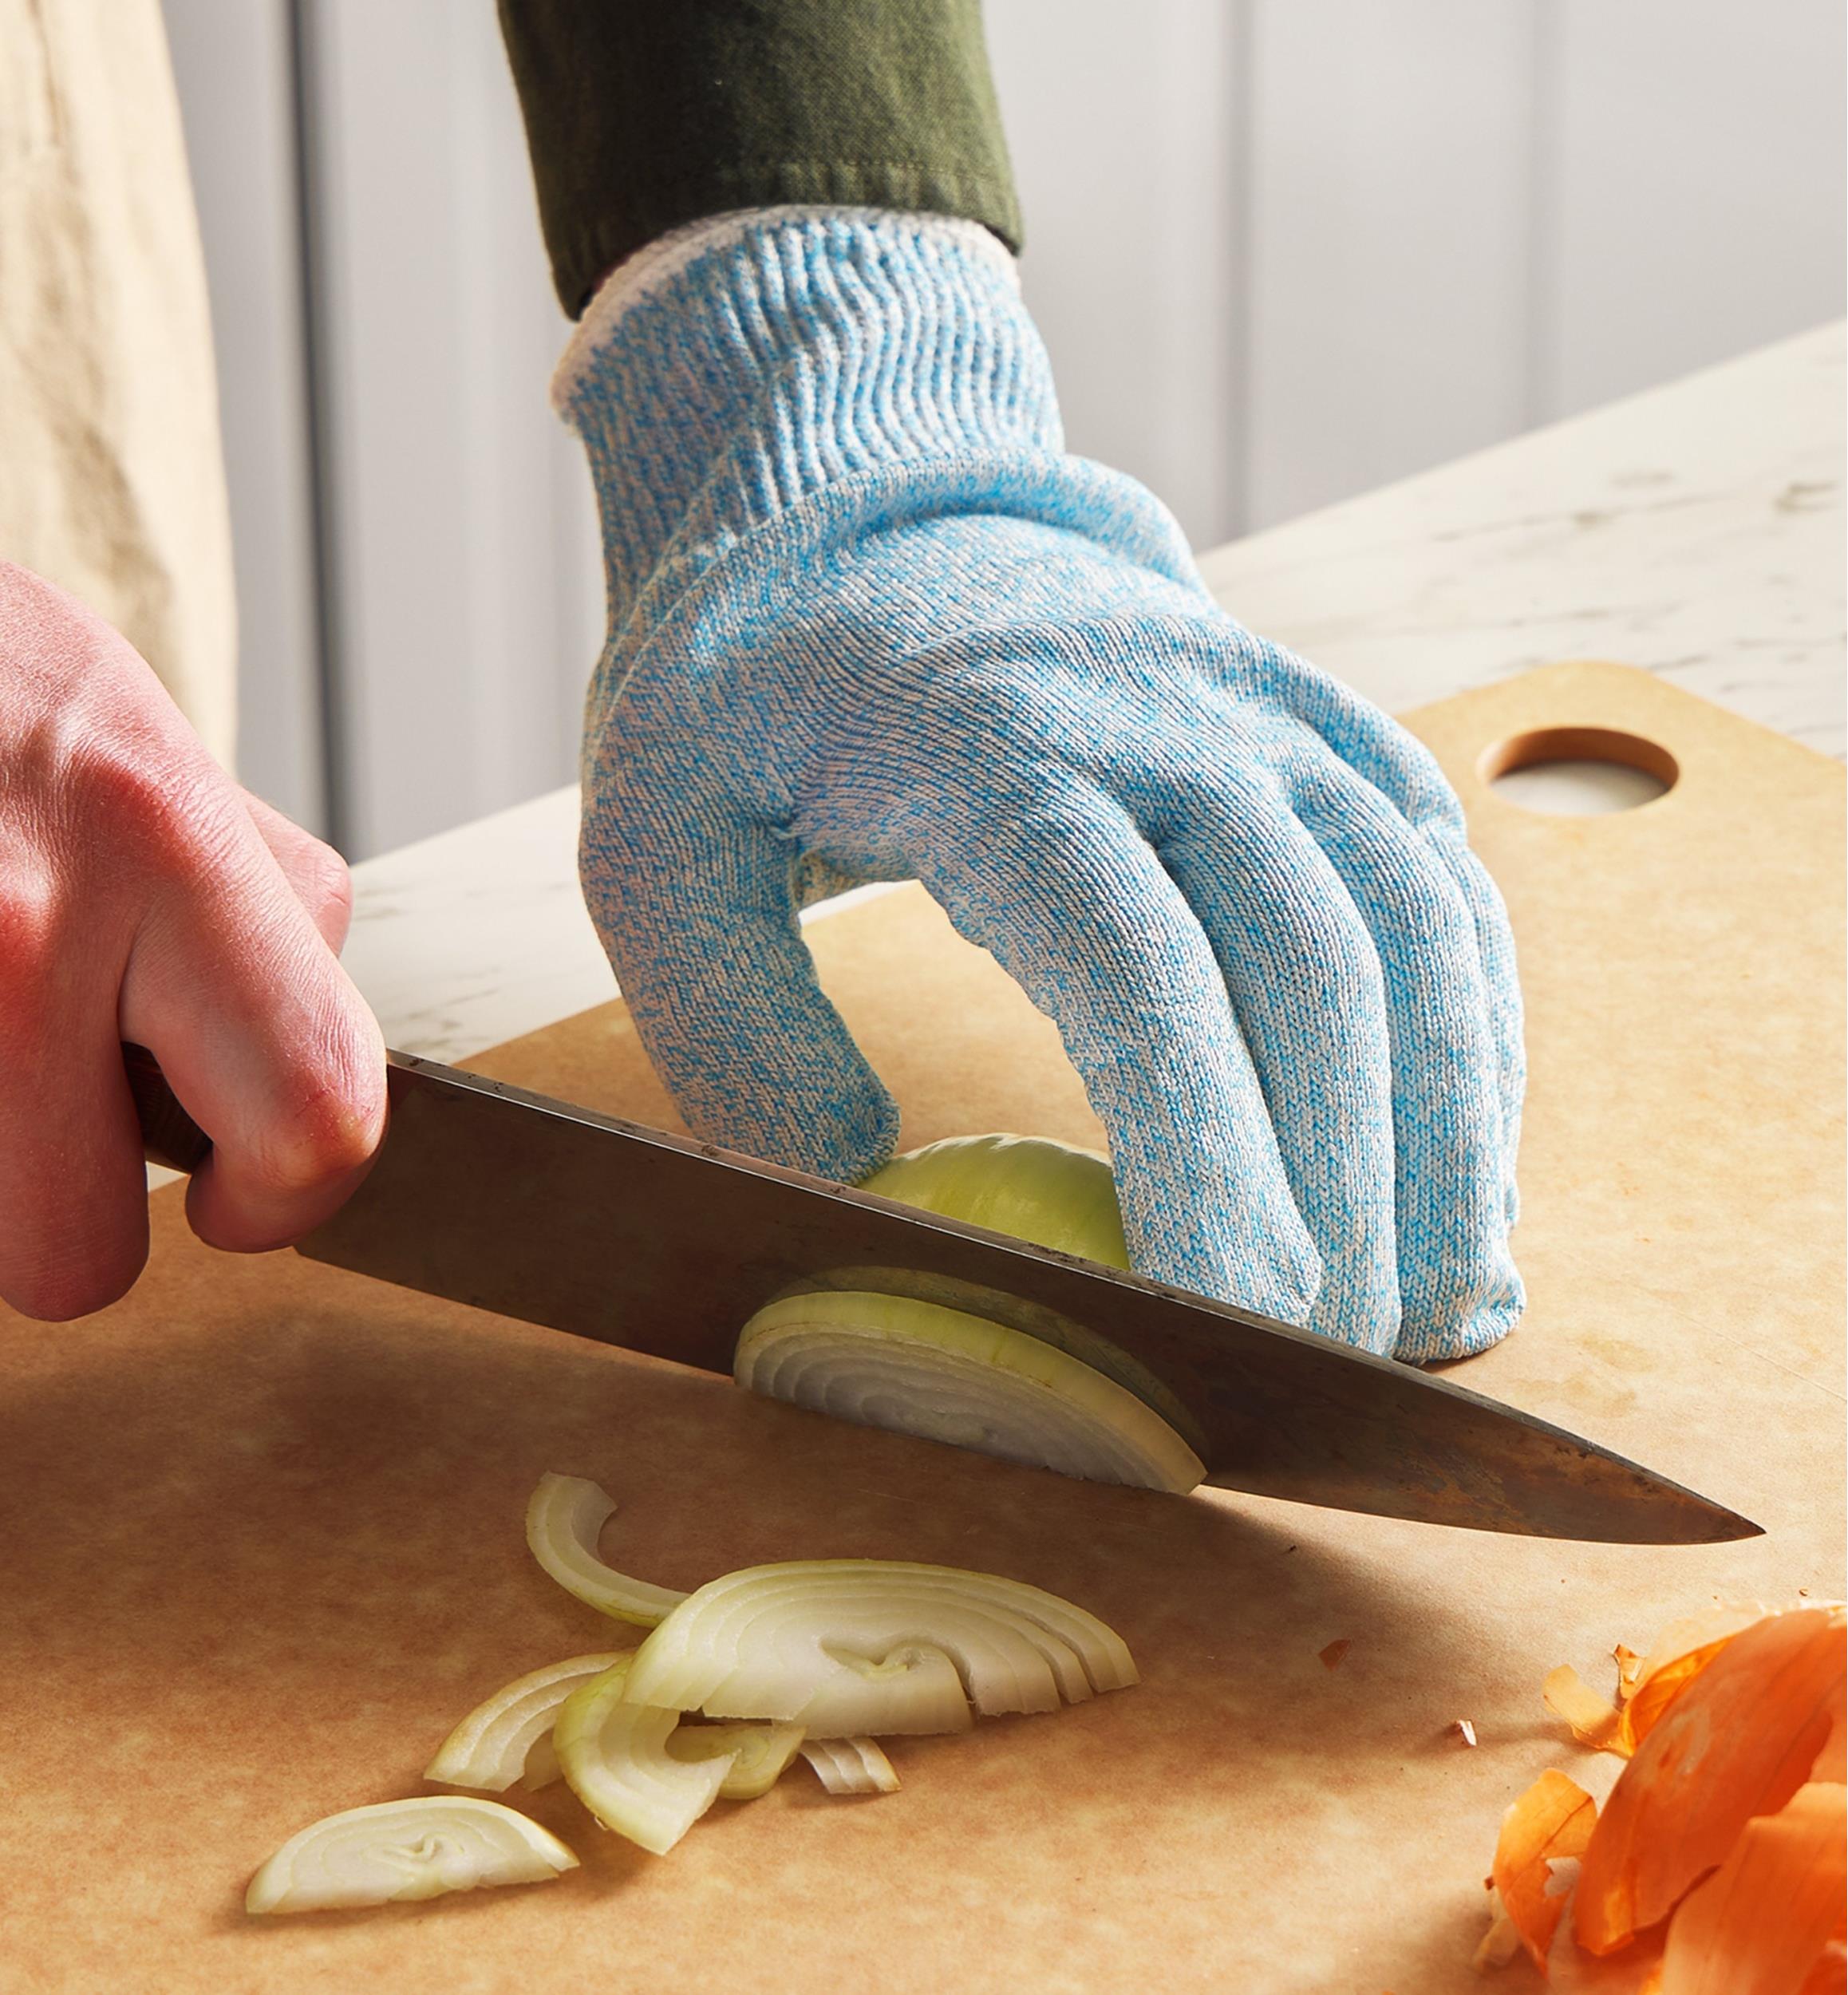 Biltek Cut Resistant Gloves Food Grade Level 5 Protection Safety